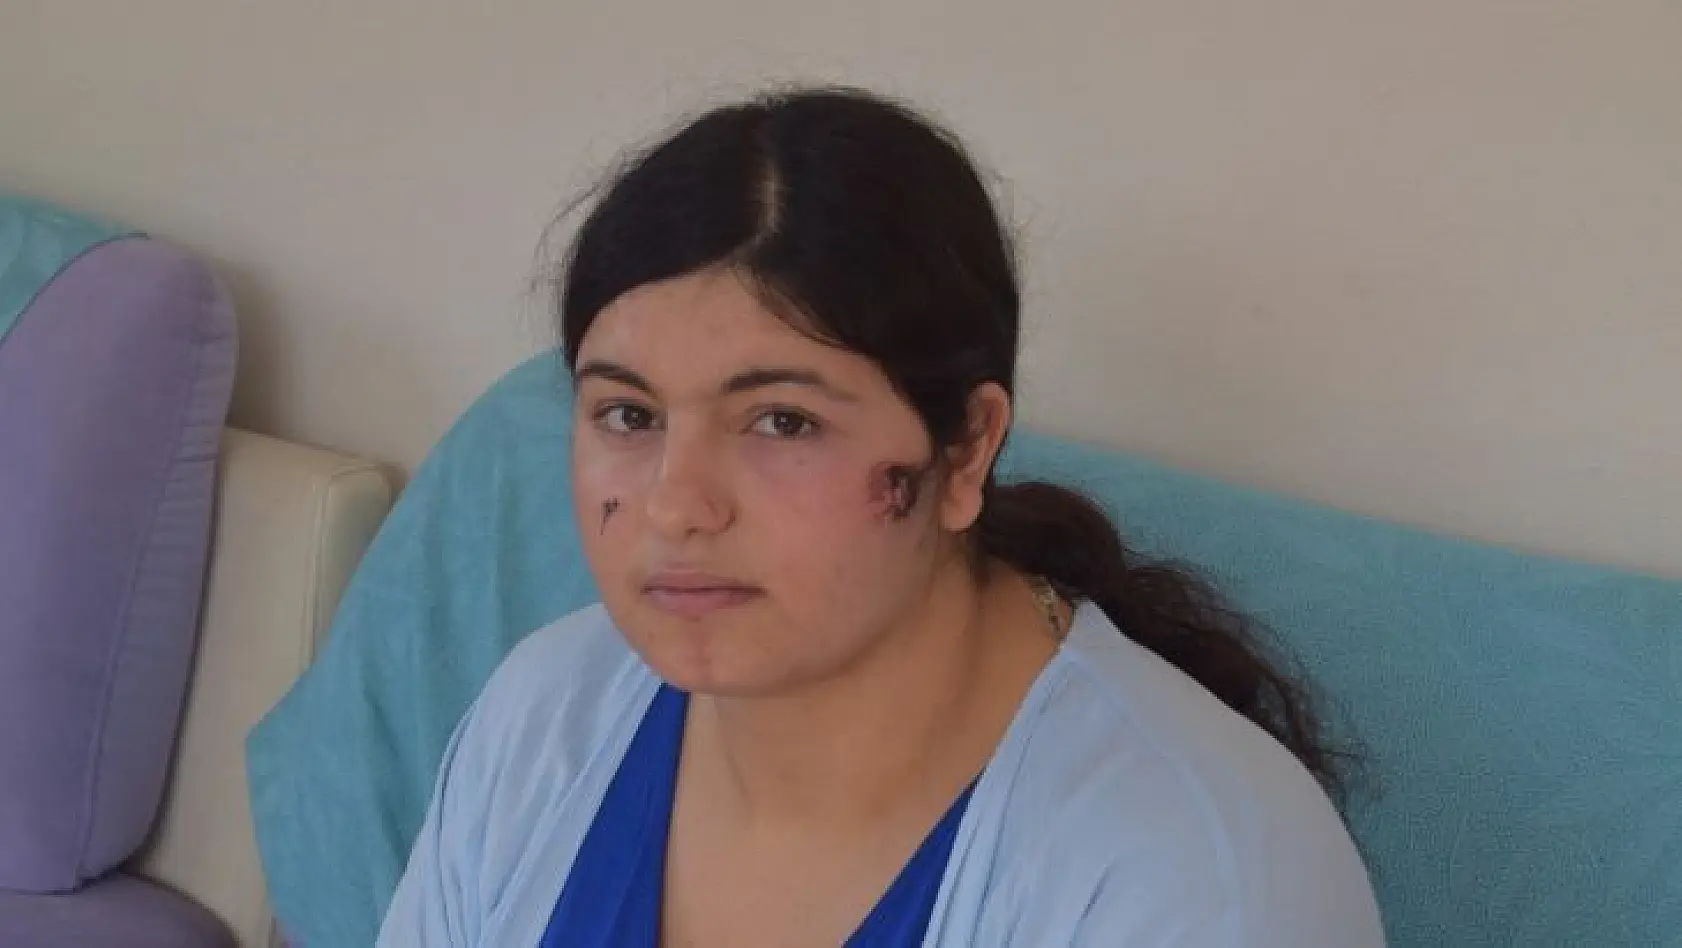 İzmir'de kocası tarafından darp edilen kadın dehşet anlarını anlattı